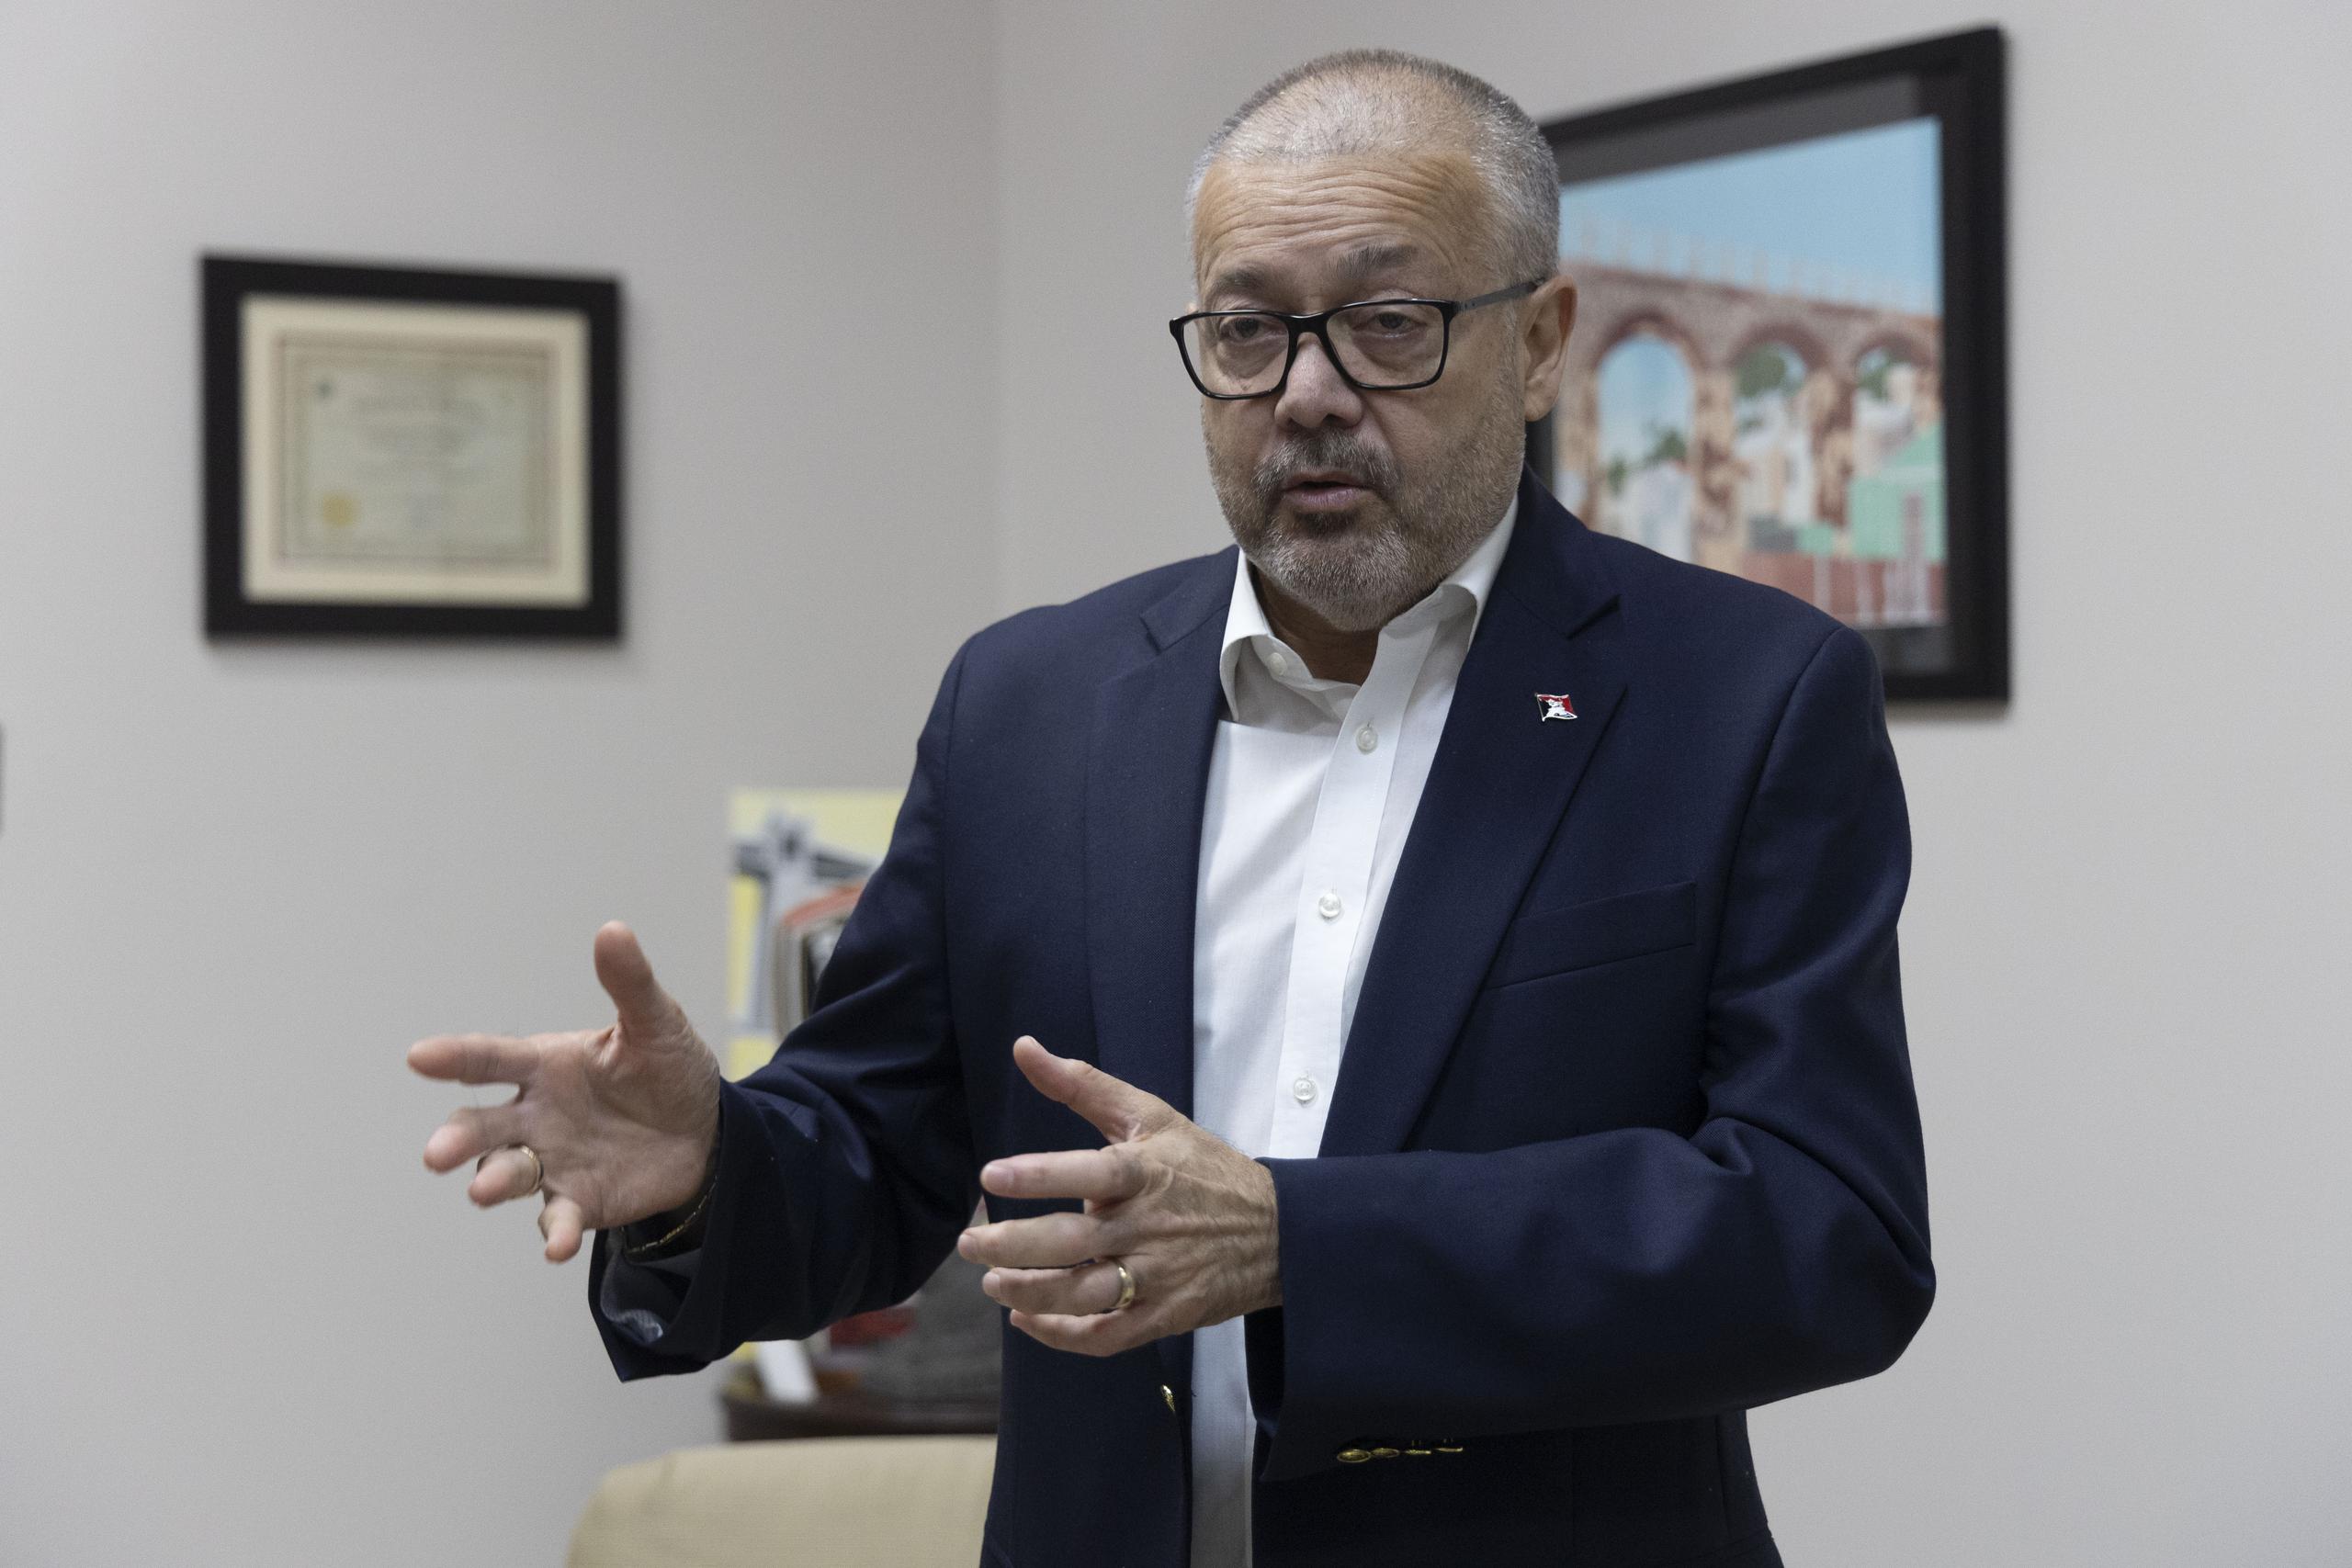 El alcalde Luis Manuel Irizarry Pabón anunció que estaría firmando el contrato para la restauración esta semana.